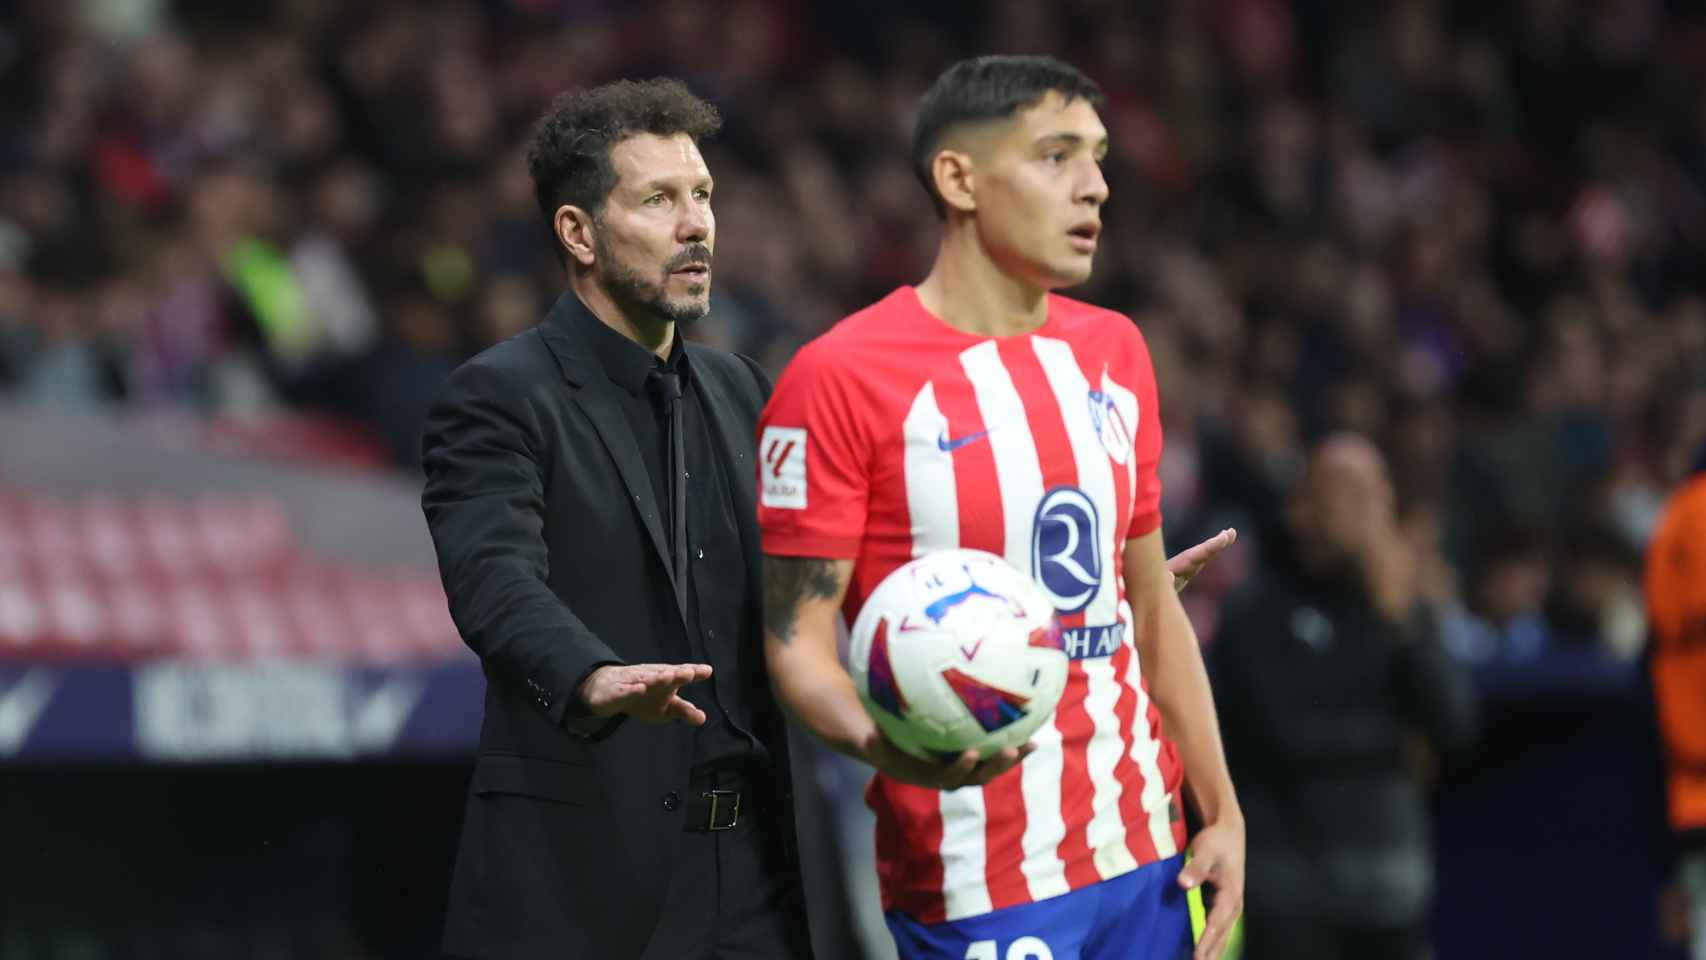 Nahuel Molina va a realizar un saque de banda y Simeone da instrucciones por detrás en un partido del Atlético de Madrid.